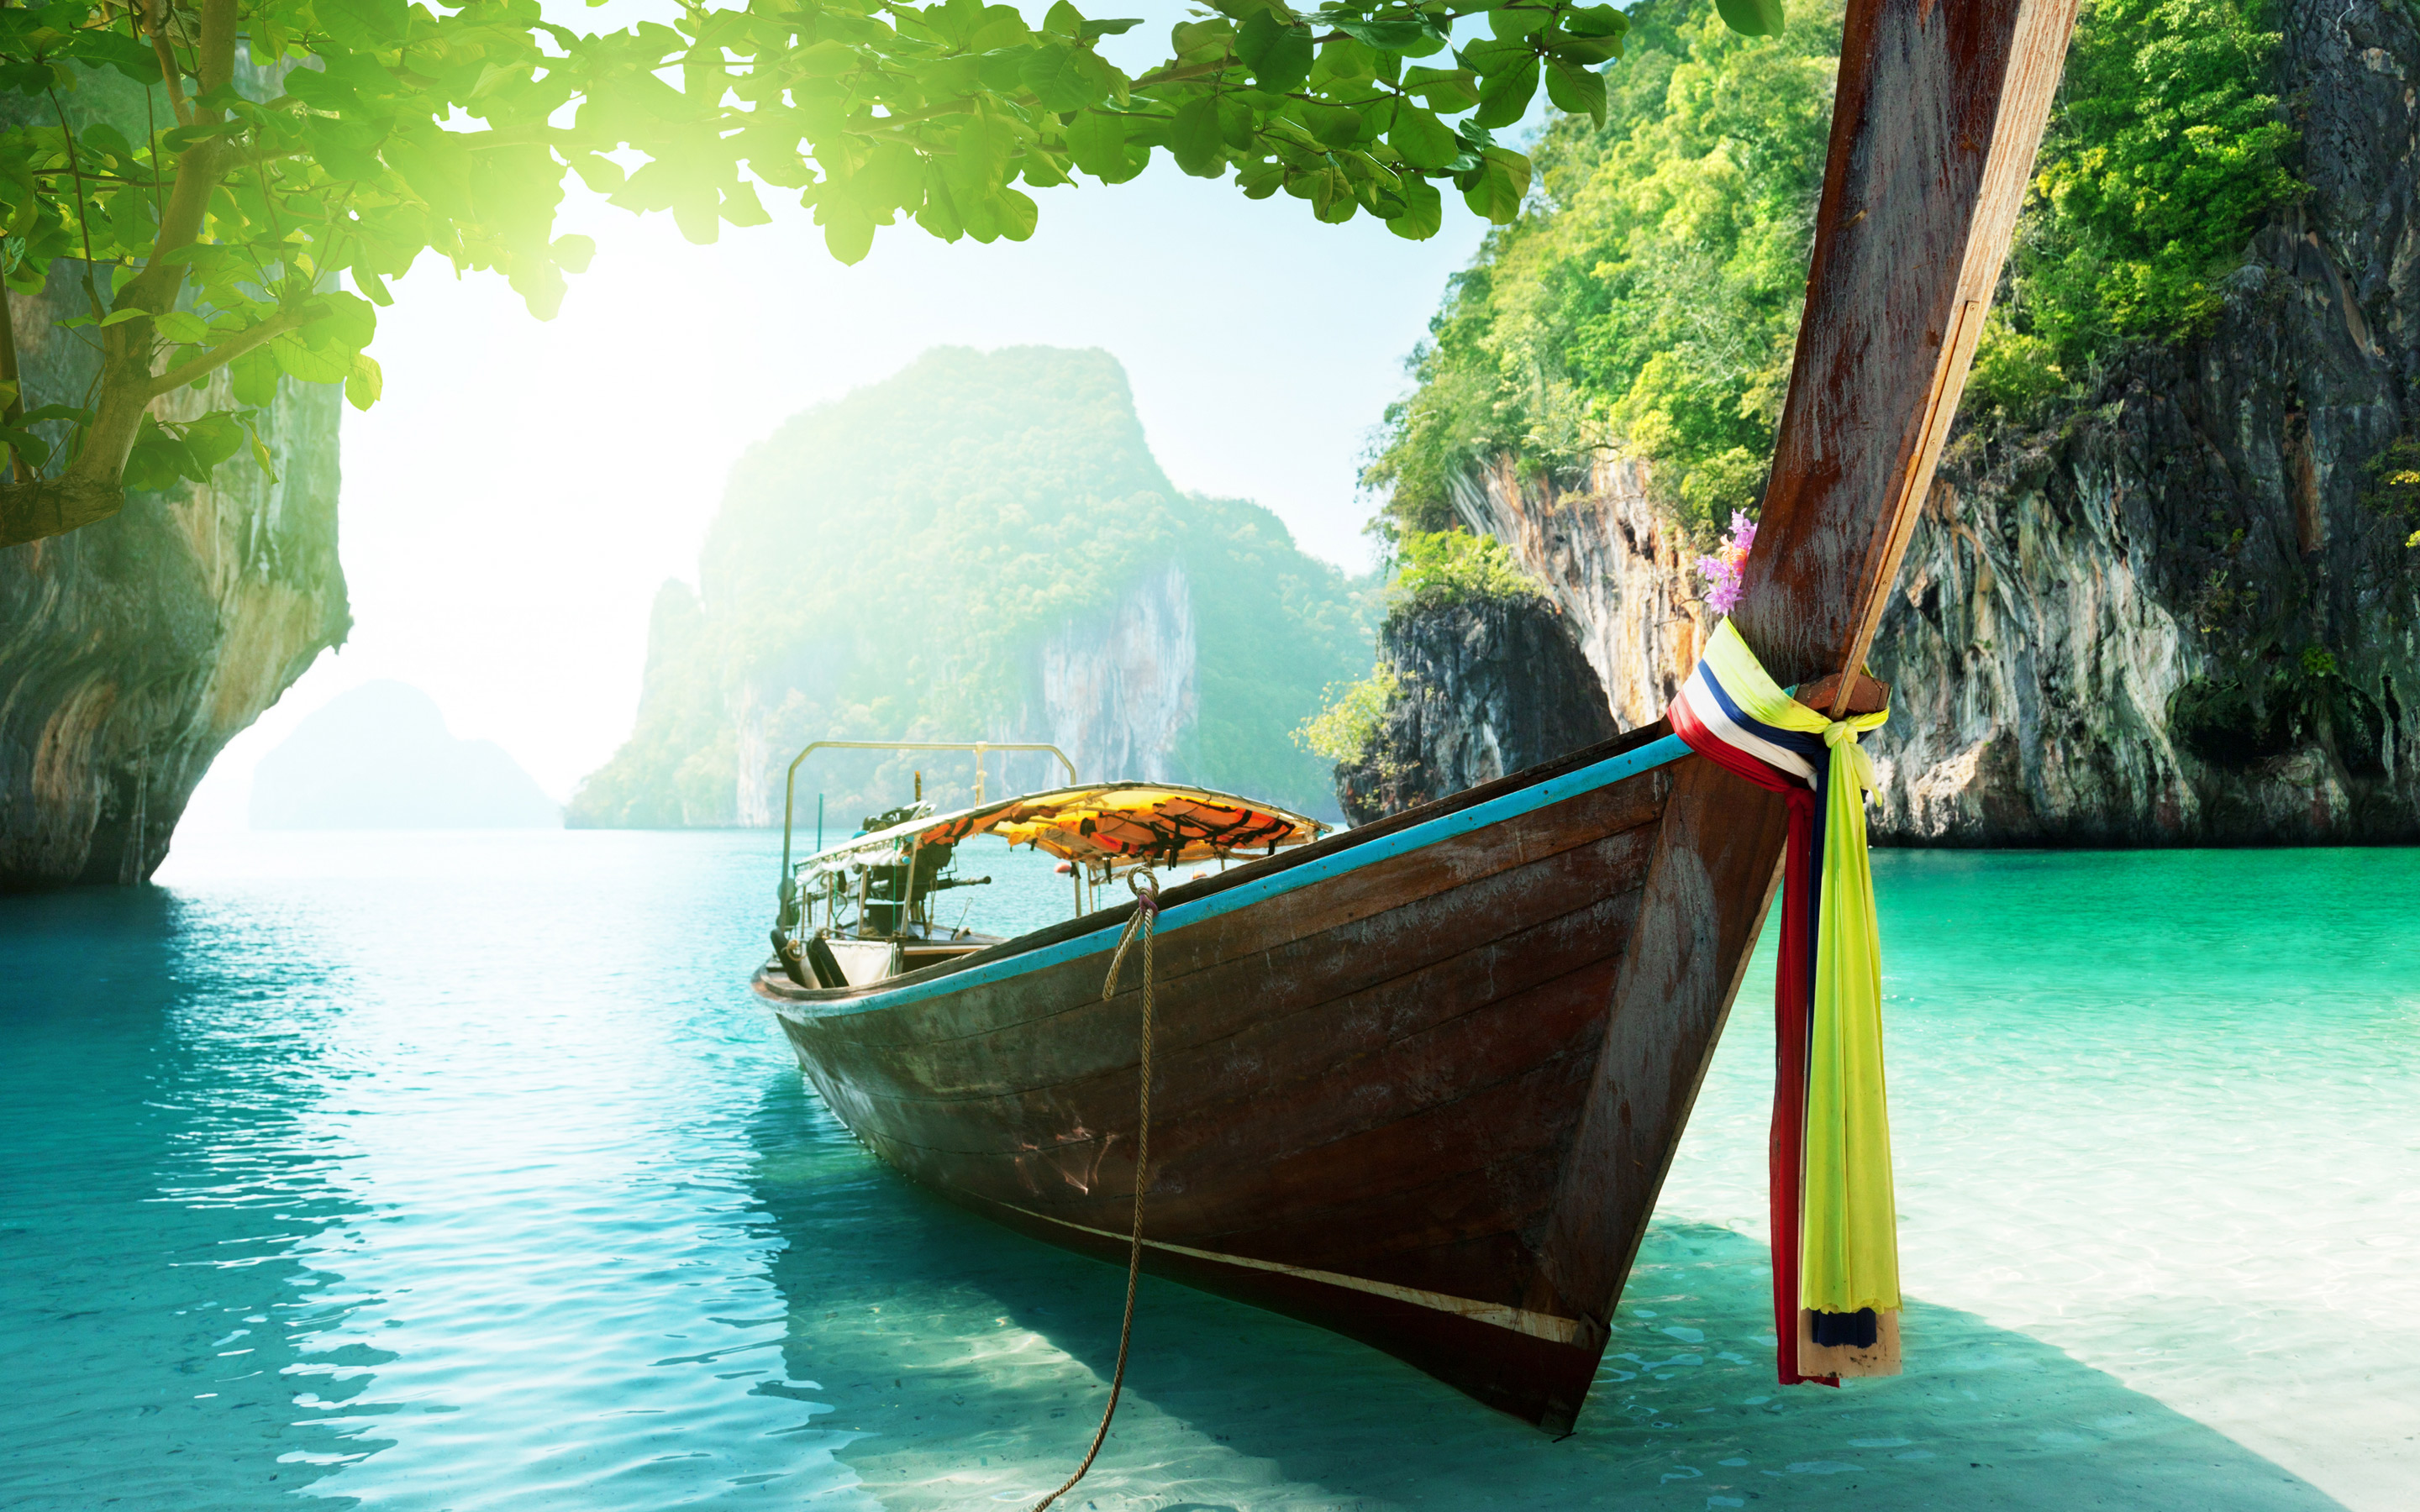 タイの壁紙,水運,自然,自然の風景,ロングテールボート,ボート